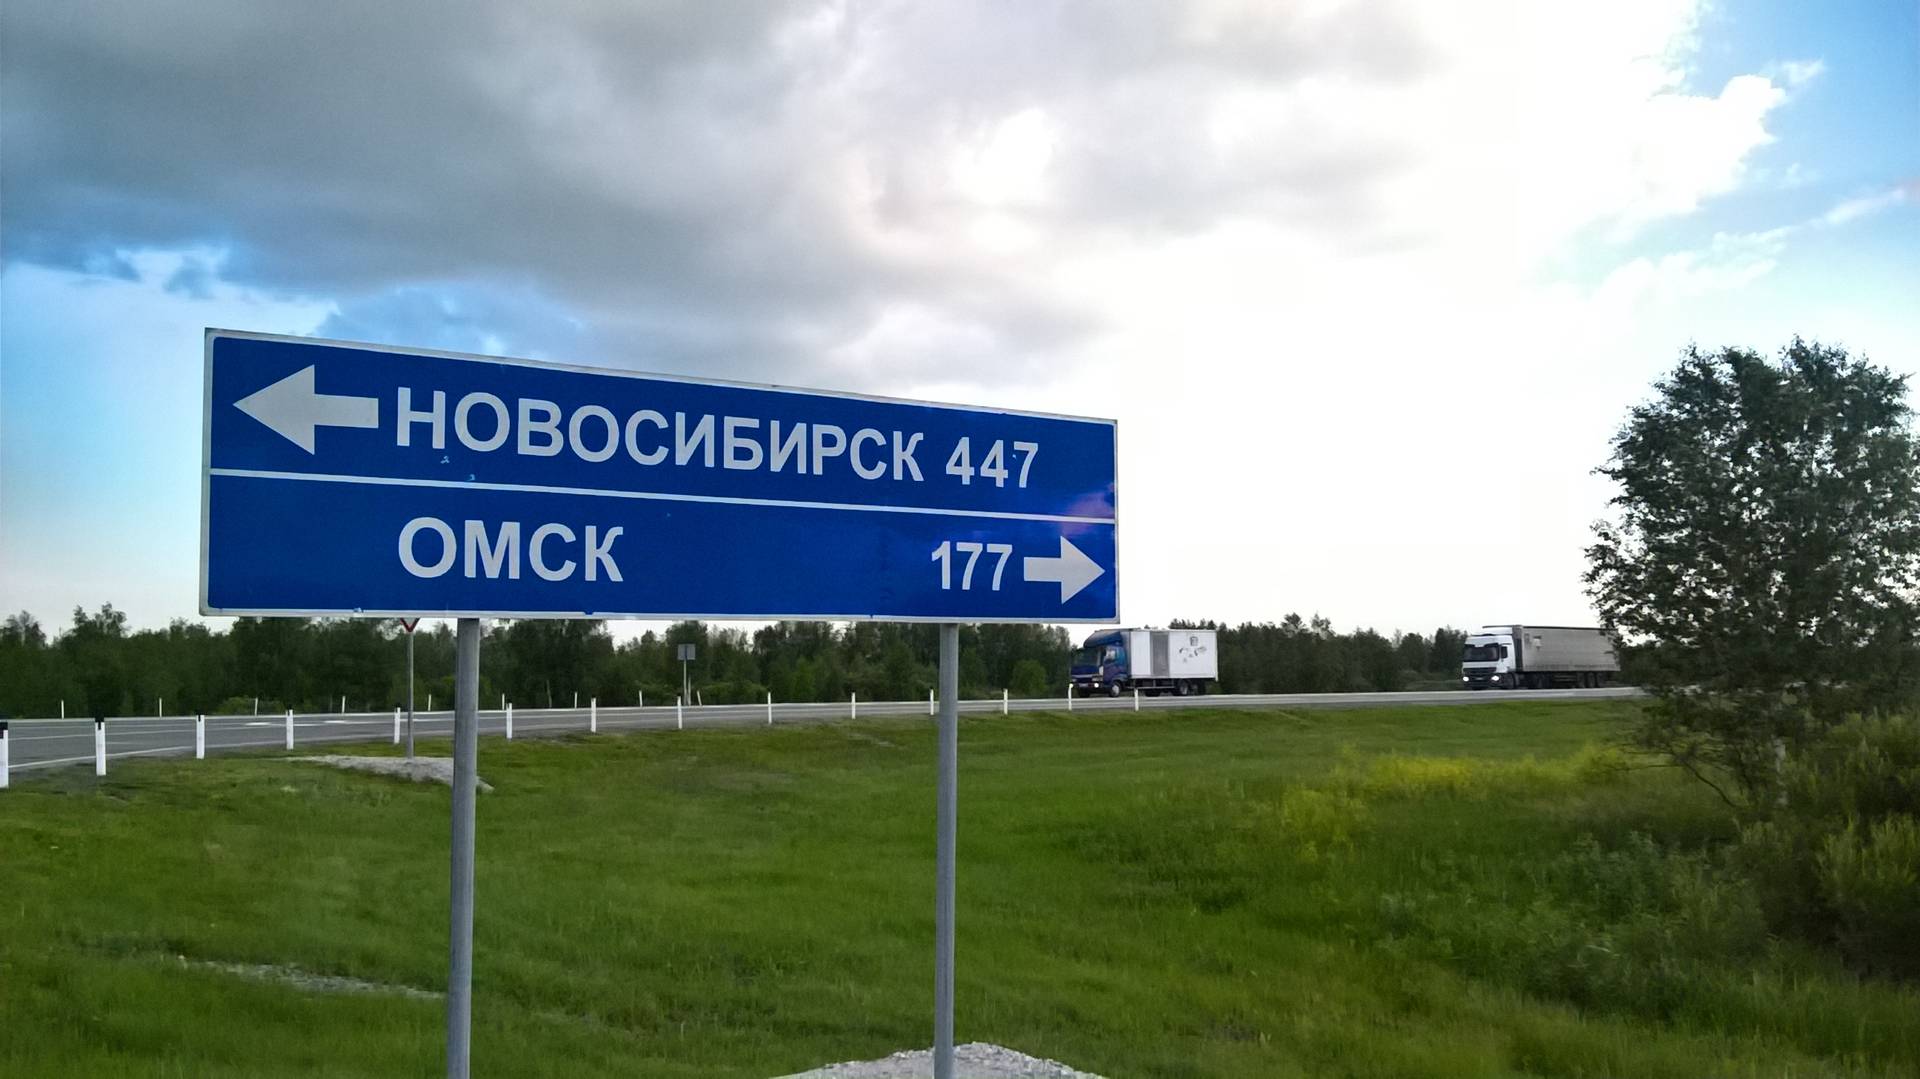 Новосибирск-Омск. Оживленная дорога.